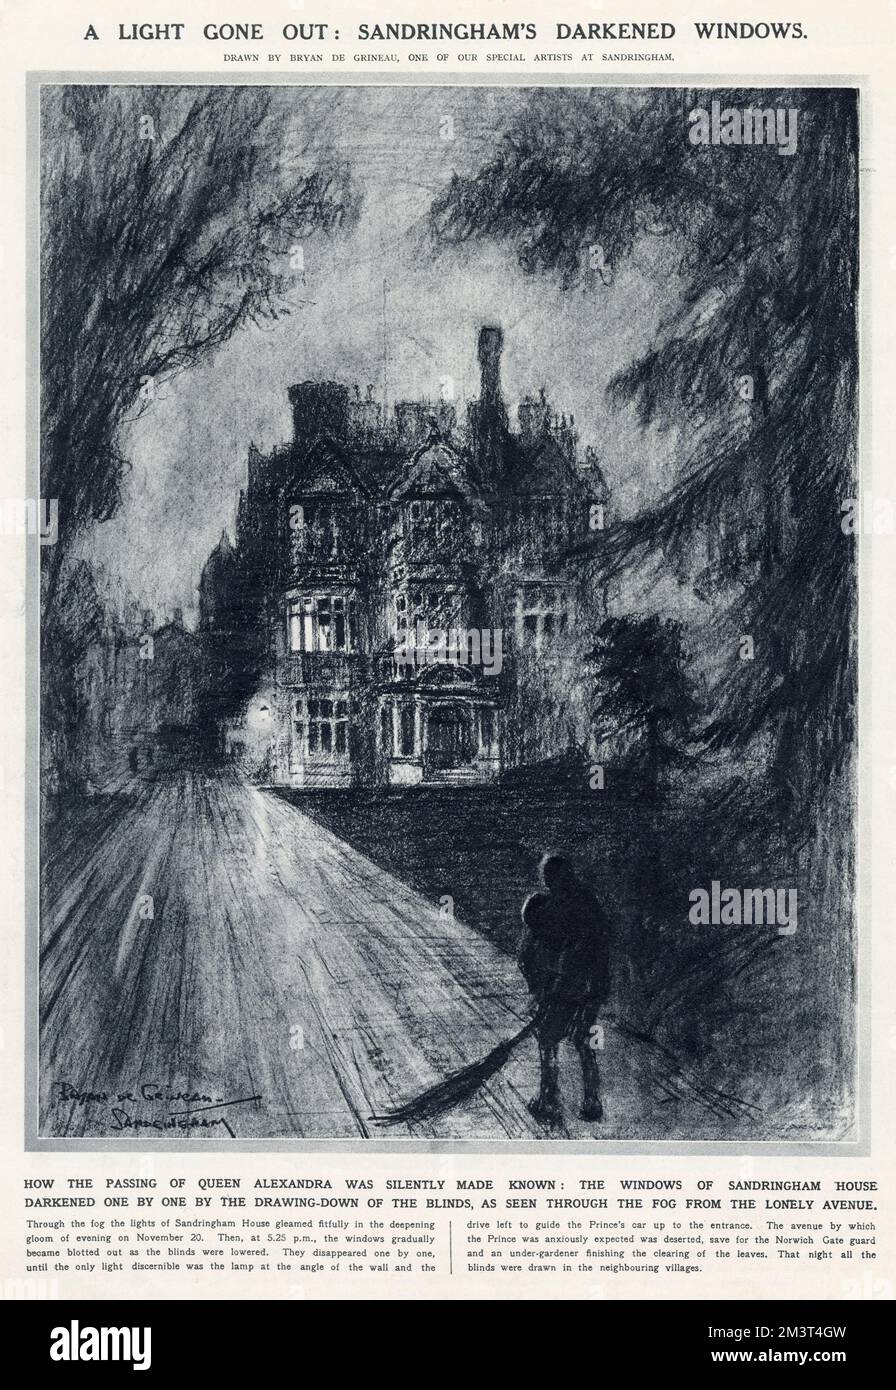 Ein Licht ging aus: Sandringhams dunkle Fenster. Wie der Tod von Königin Alexandra lautlos bekannt wurde: Die Fenster des Sandringham House wurden am Abend des 20. November 1925 durch das Herunterziehen der Jalousien verdunkelt, wie sie durch den Nebel von der einsamen Straße aus gesehen wurden. Stockfoto